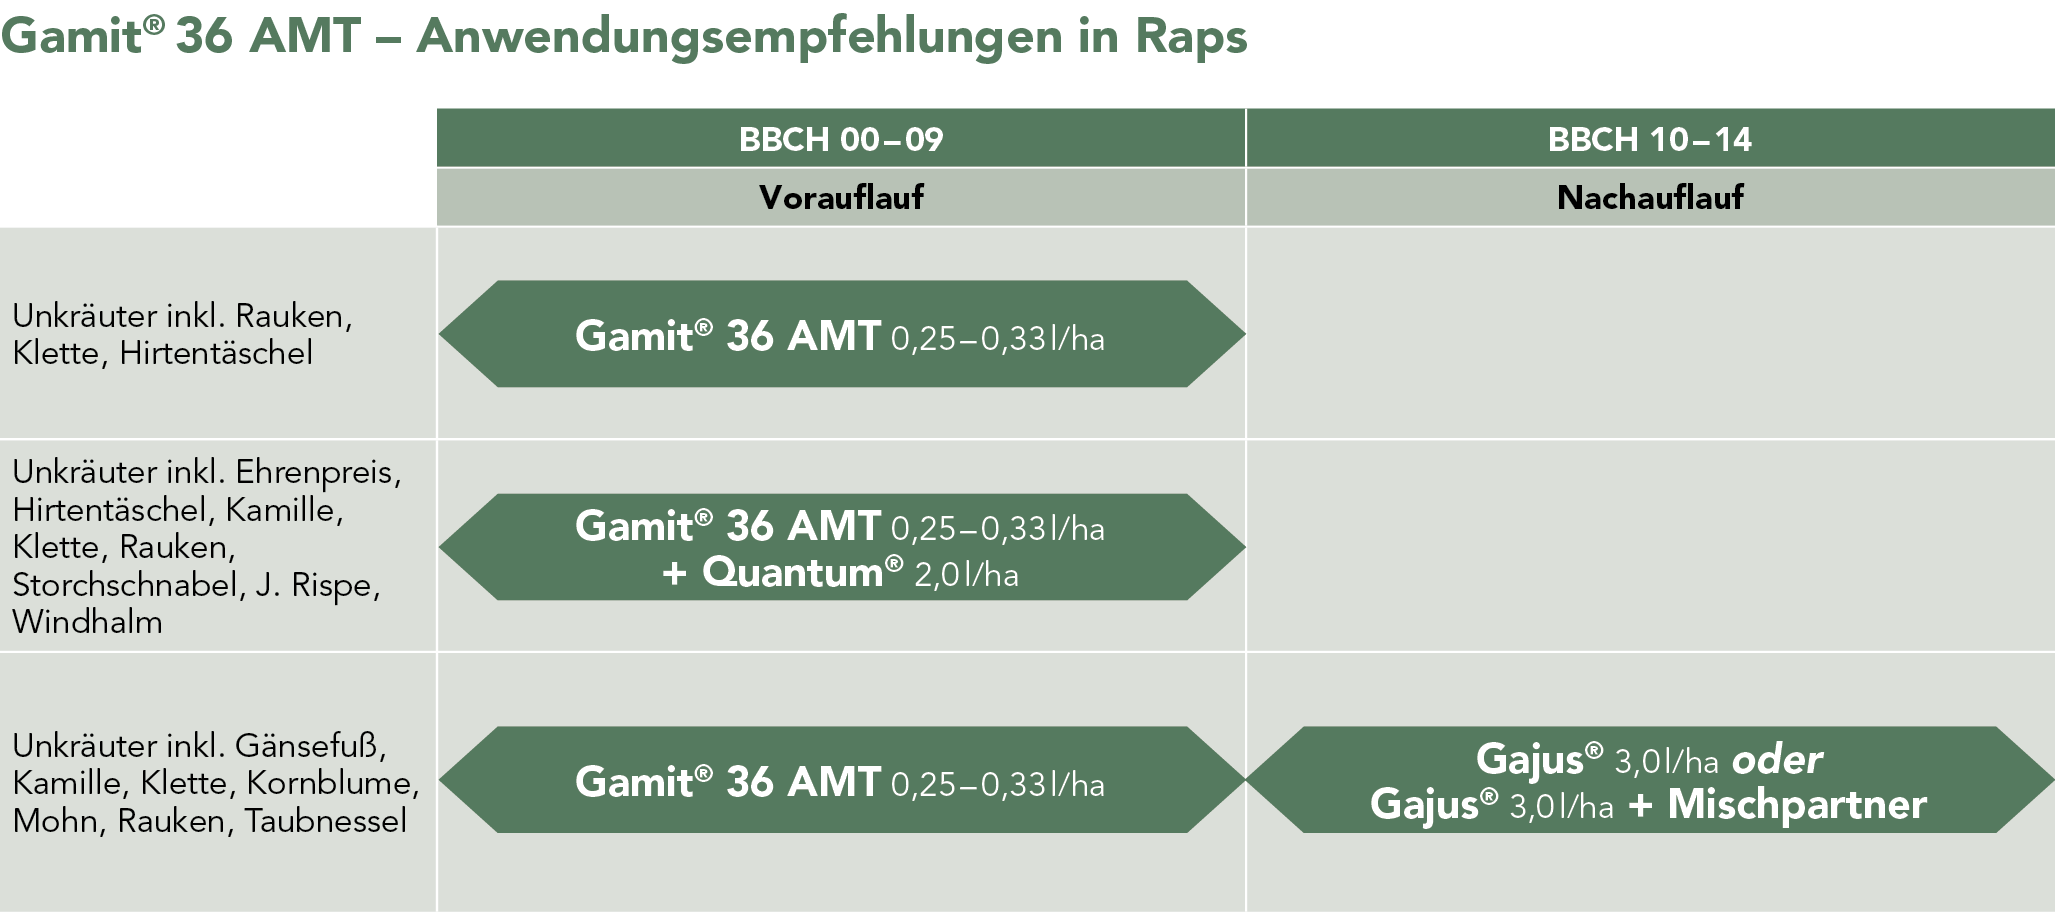 Gamit® 36 AMT – Anwendungsempfehlungen in Raps